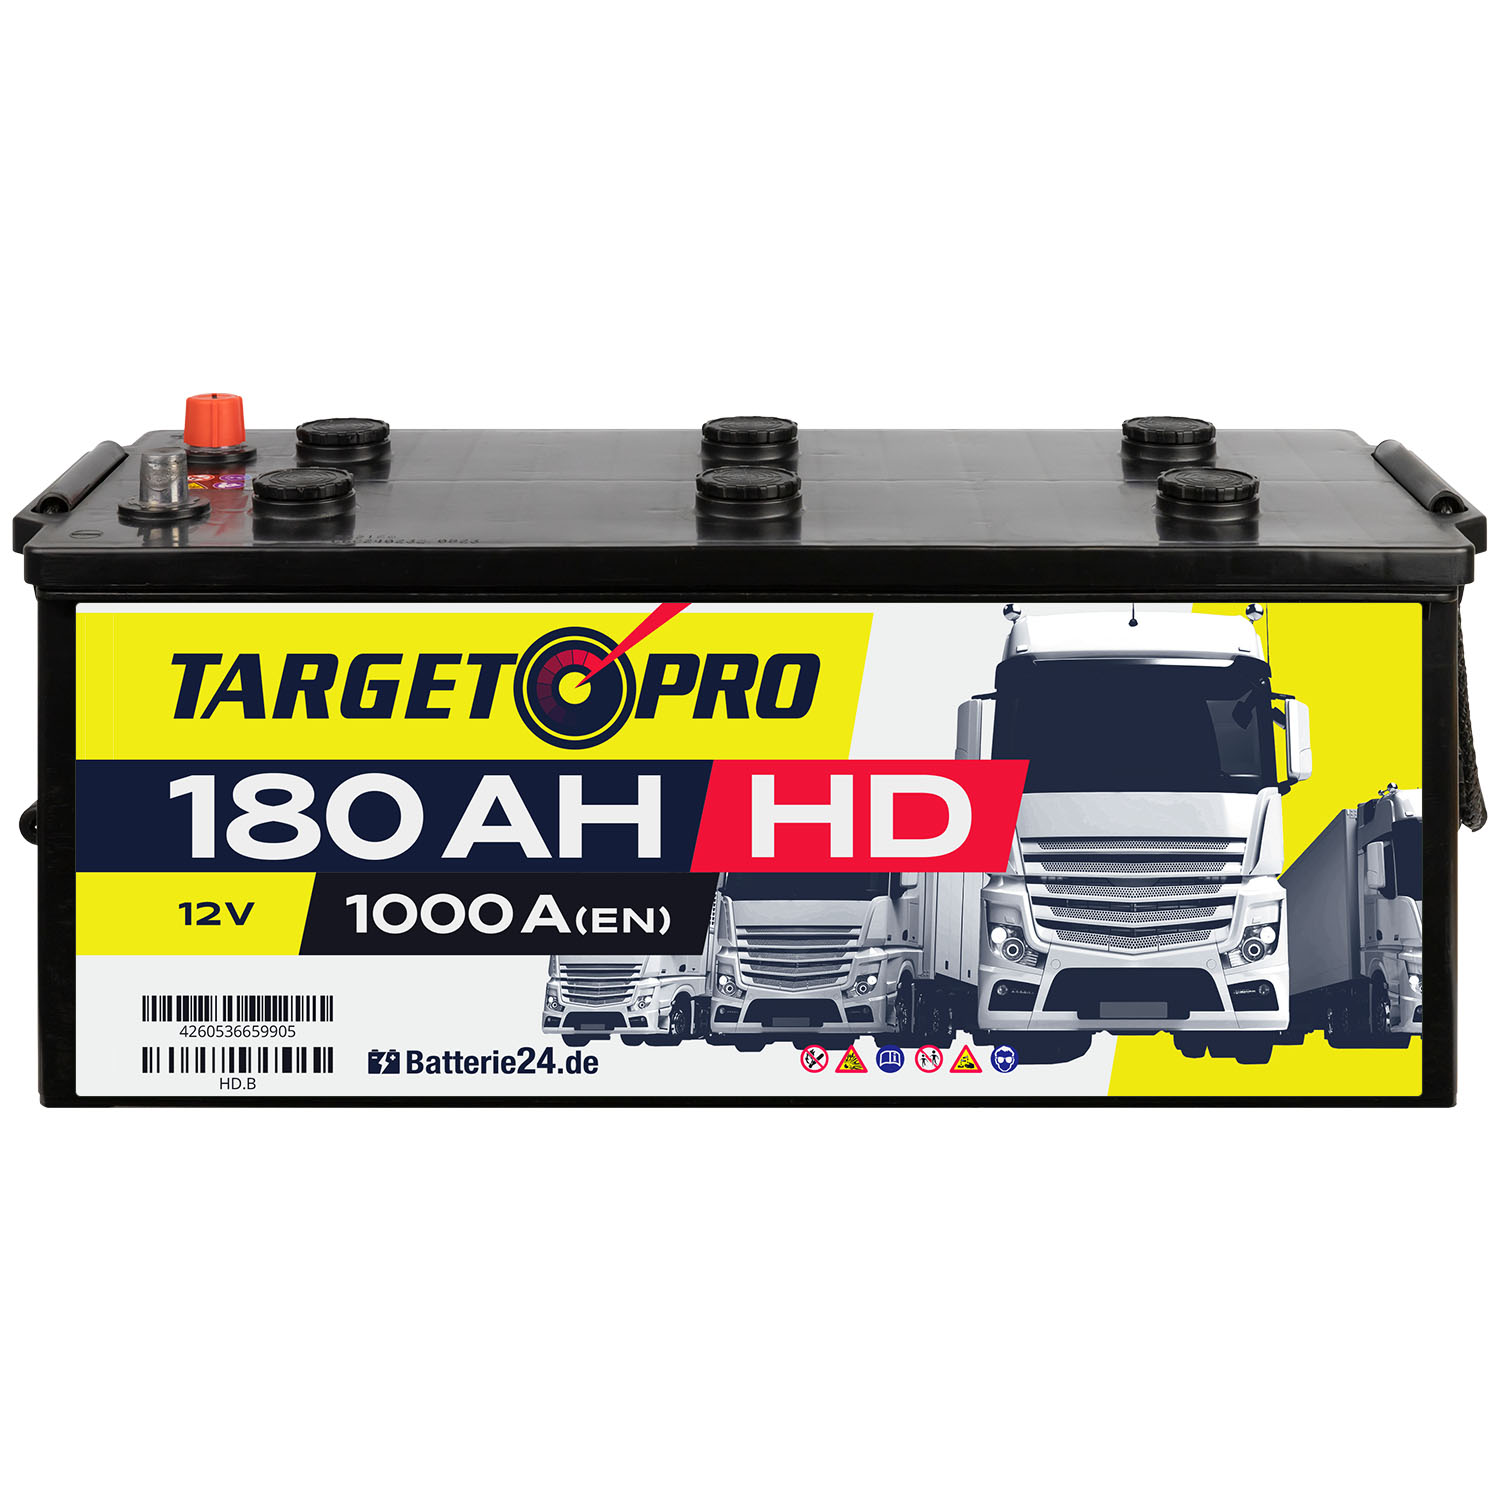 Target Pro HD 12V 180Ah LKW Batterie